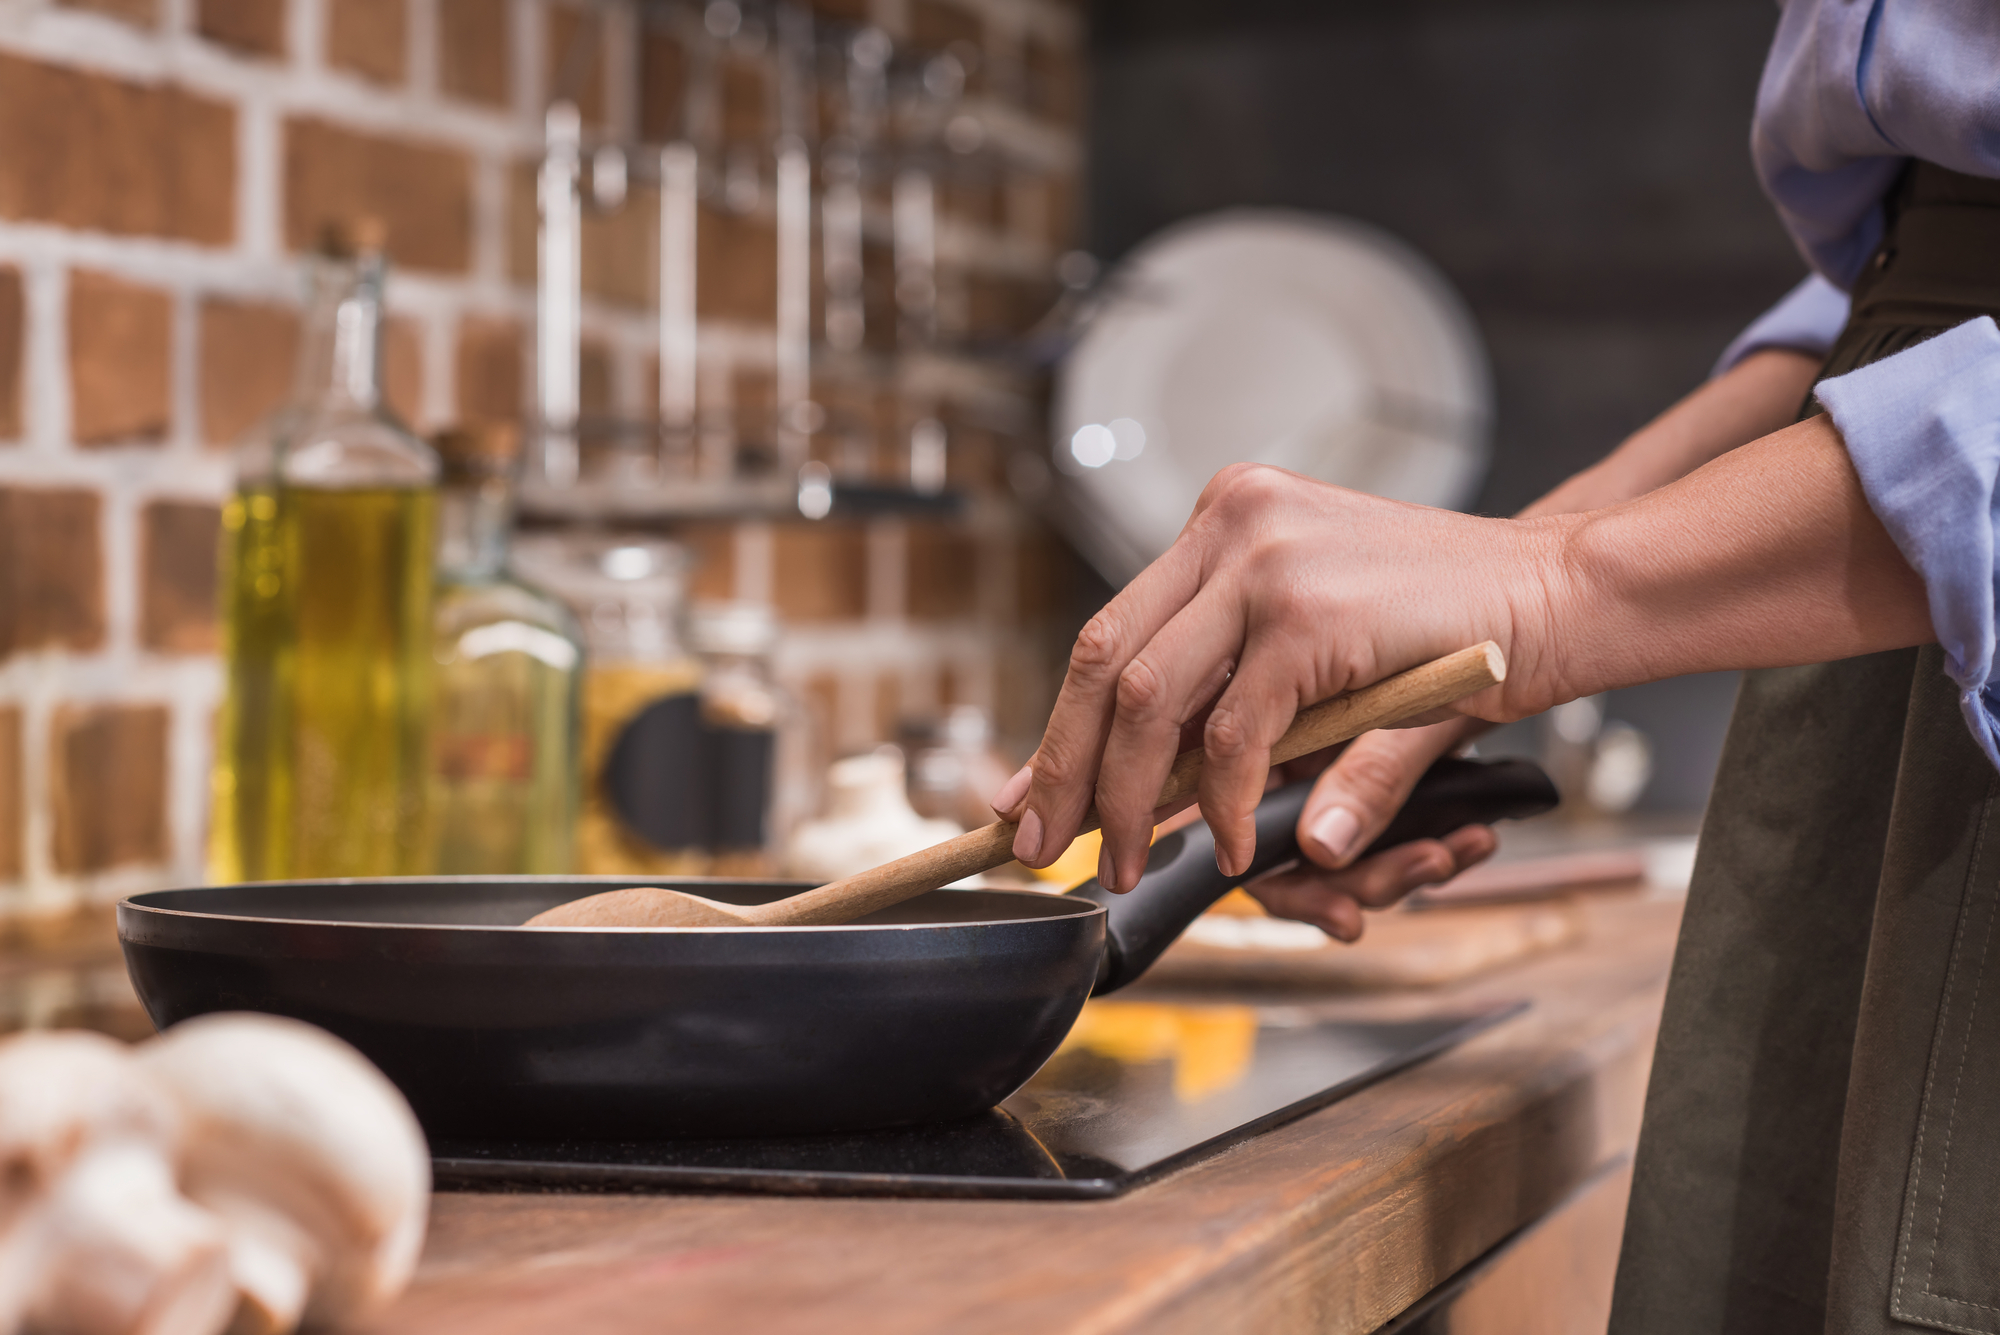 Foto ilustrativa das mãos de uma cozinheira com uma colher e uma frigideira. No cenário aparecem a bancada e a parede de uma cozinha.